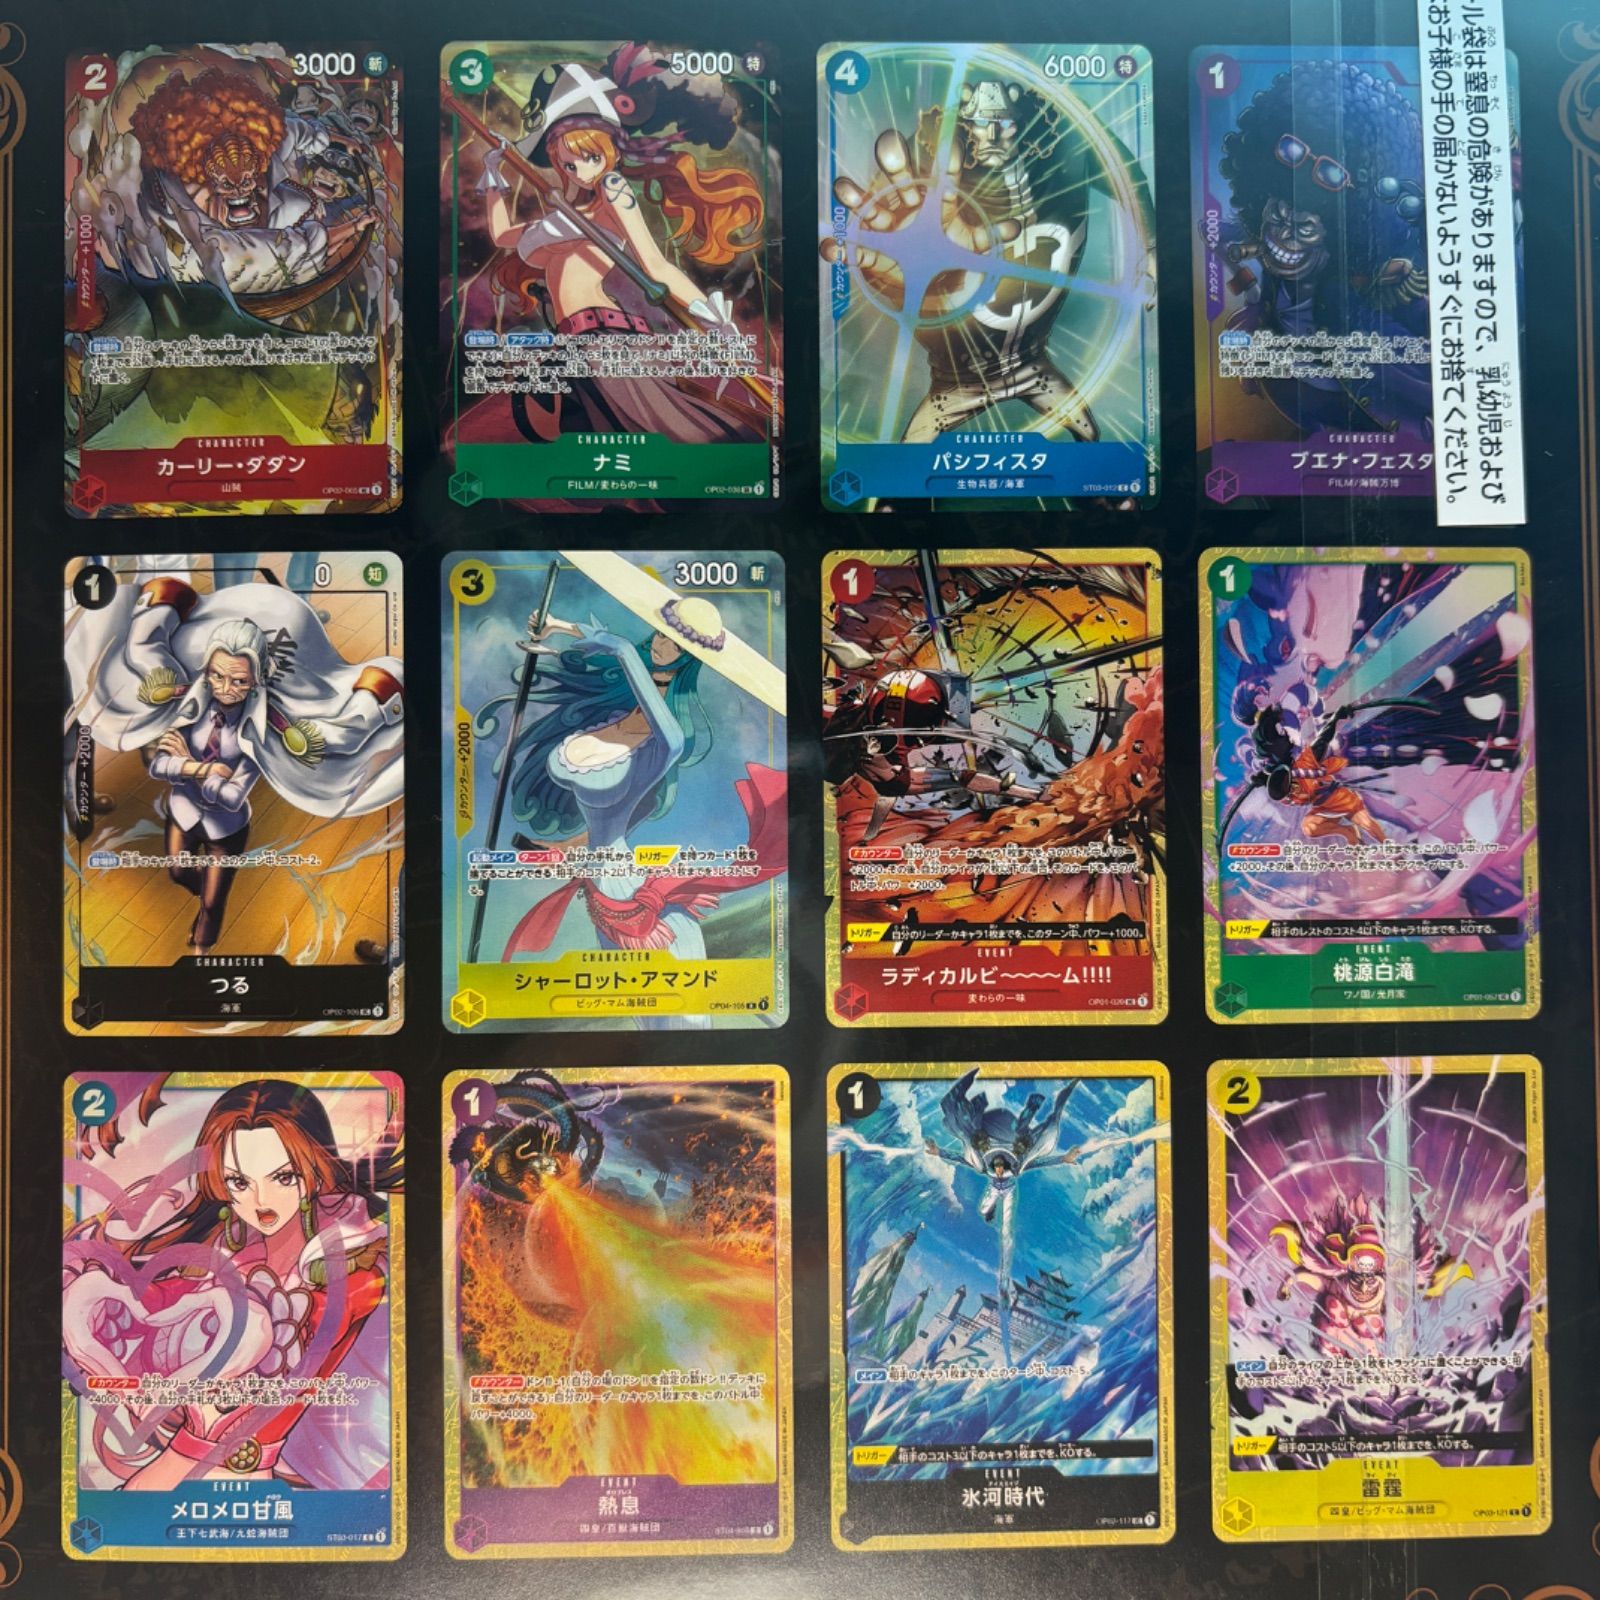 【2冊セット】ワンピースカード プレミアムカードコレクション ベストセレクション vol 1